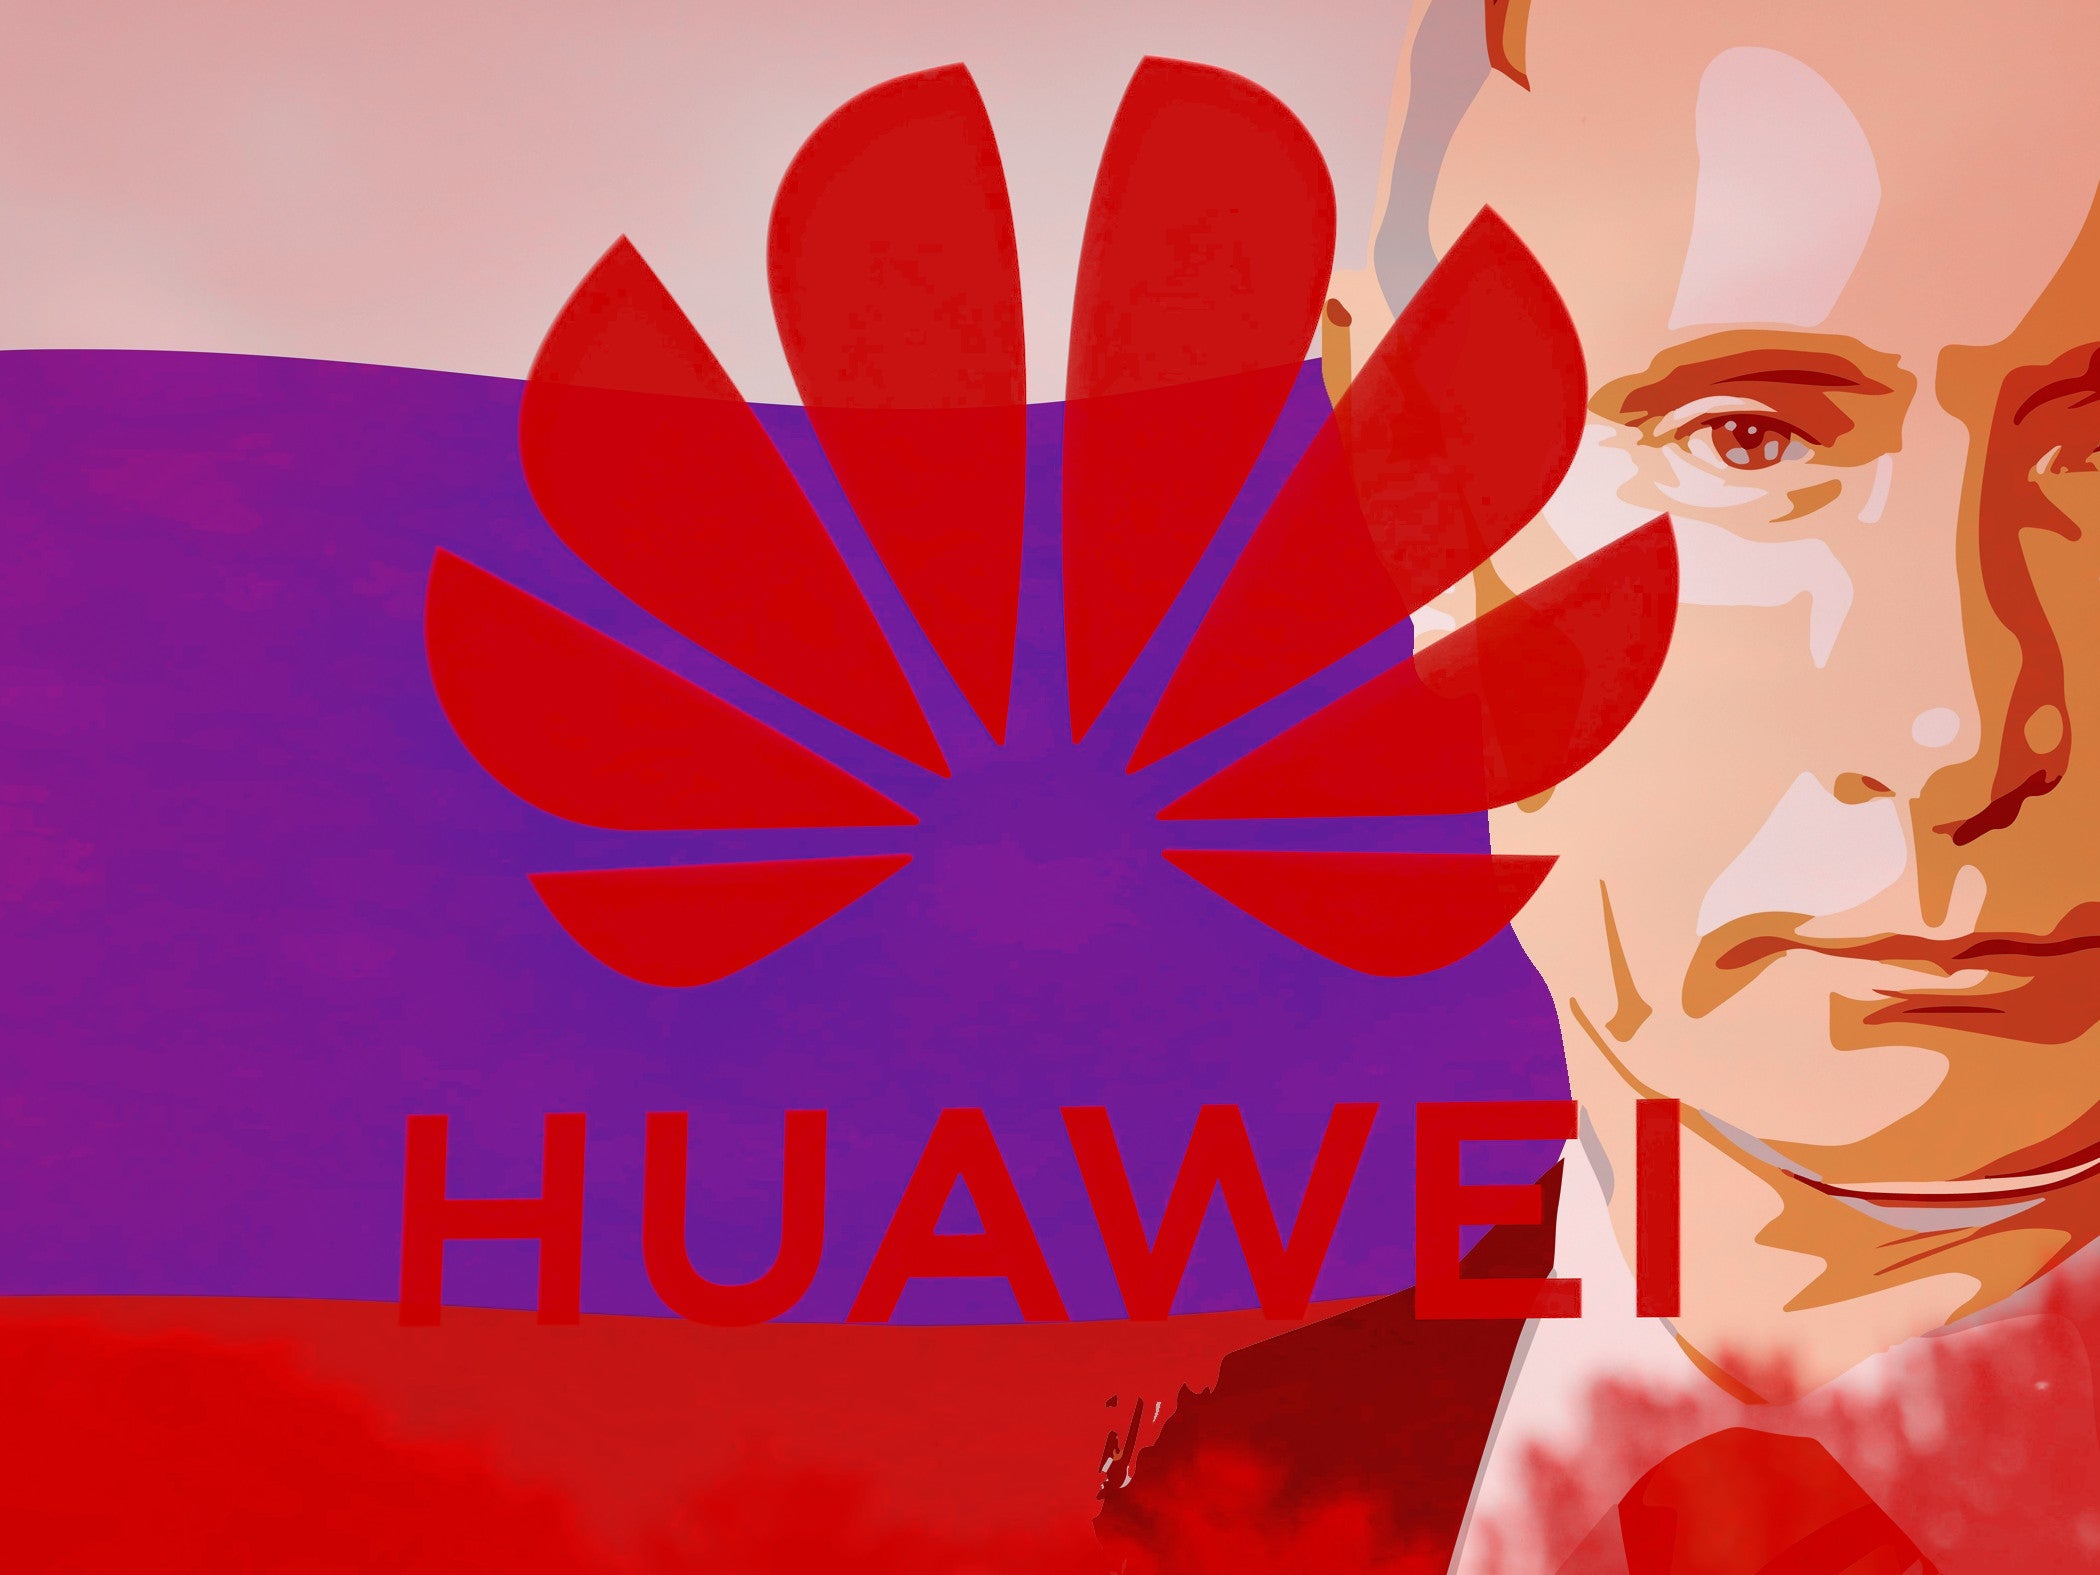 #Hat Huawei Russland geholfen? Jetzt spricht der Konzern Klartext